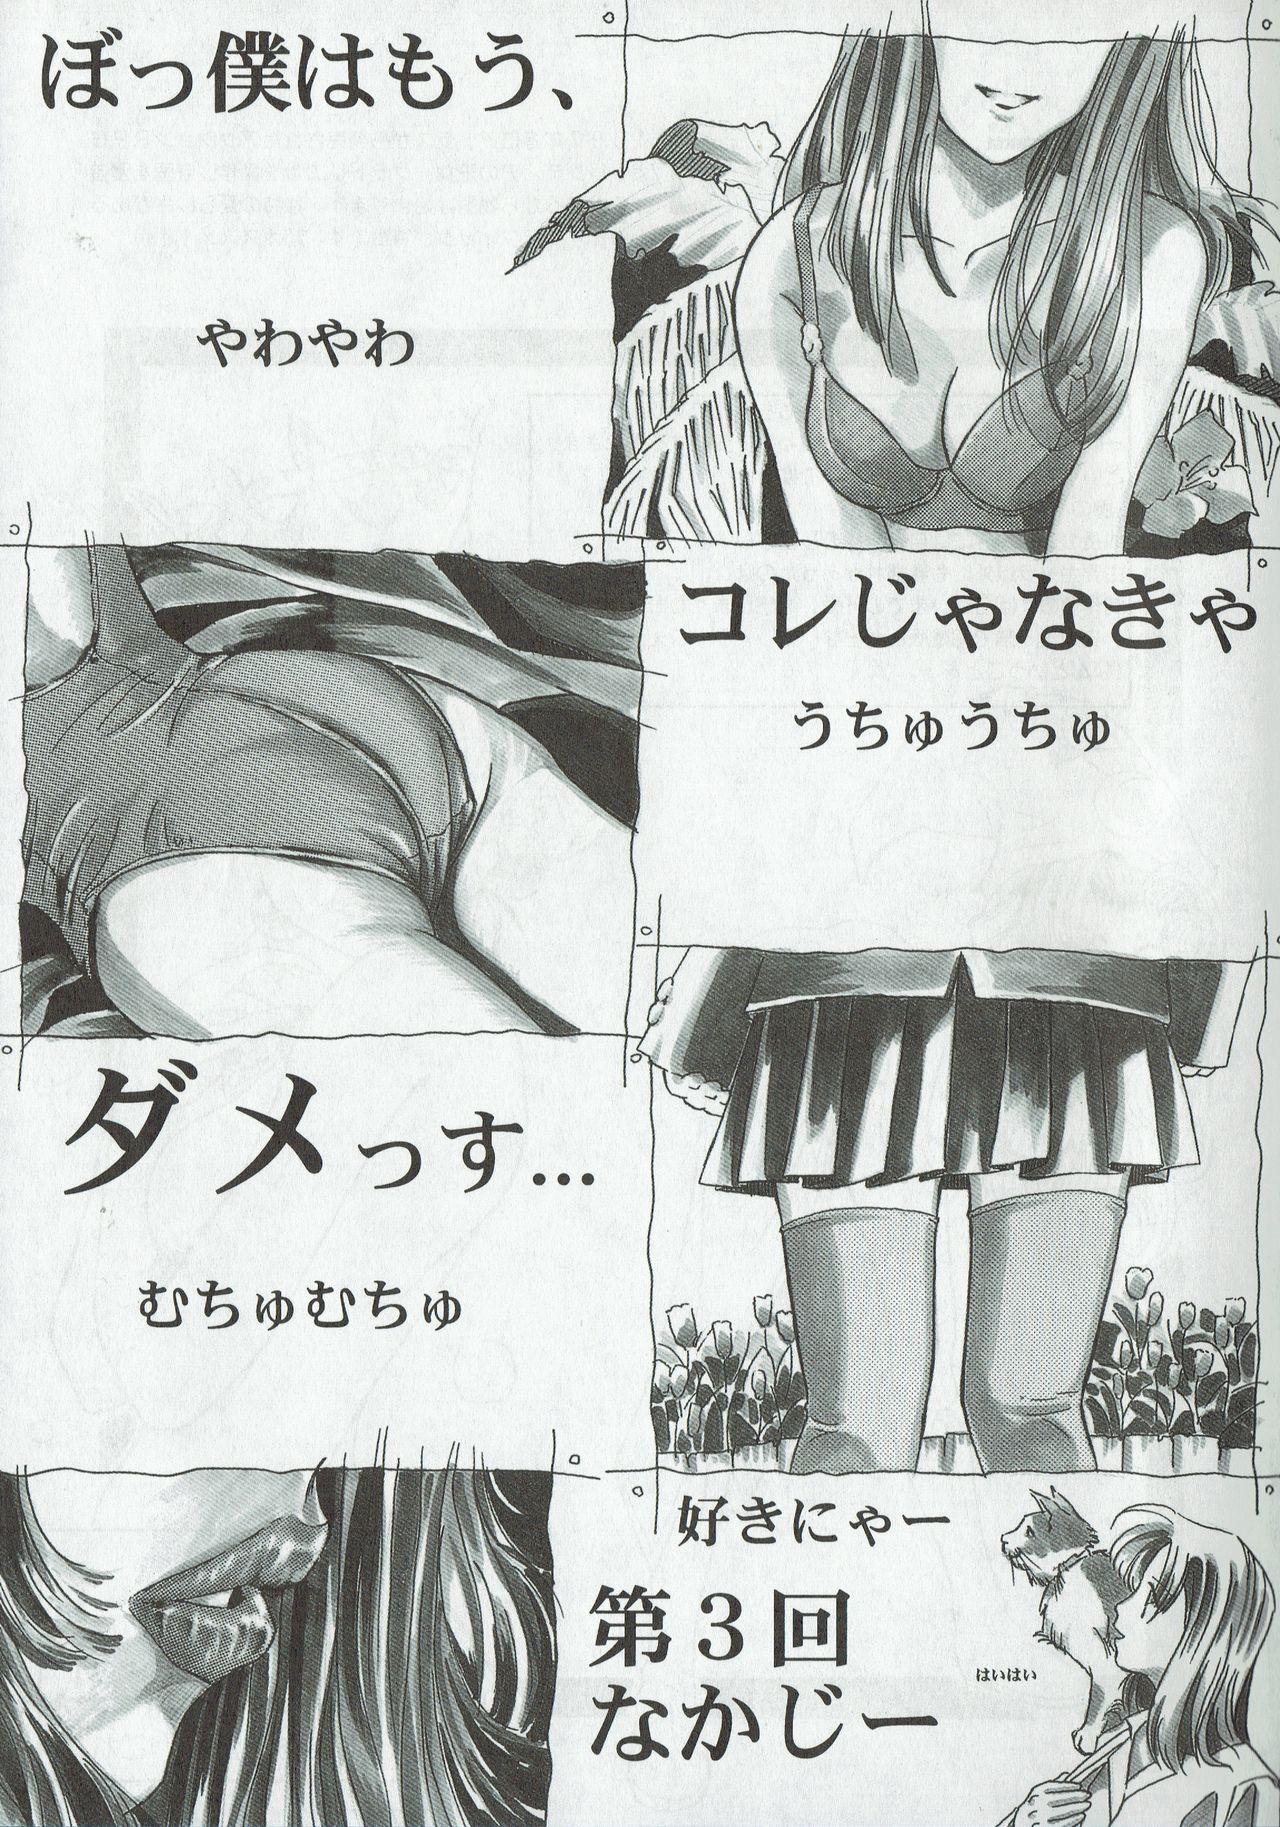 Arisu no Denchi Bakudan Vol. 03 22